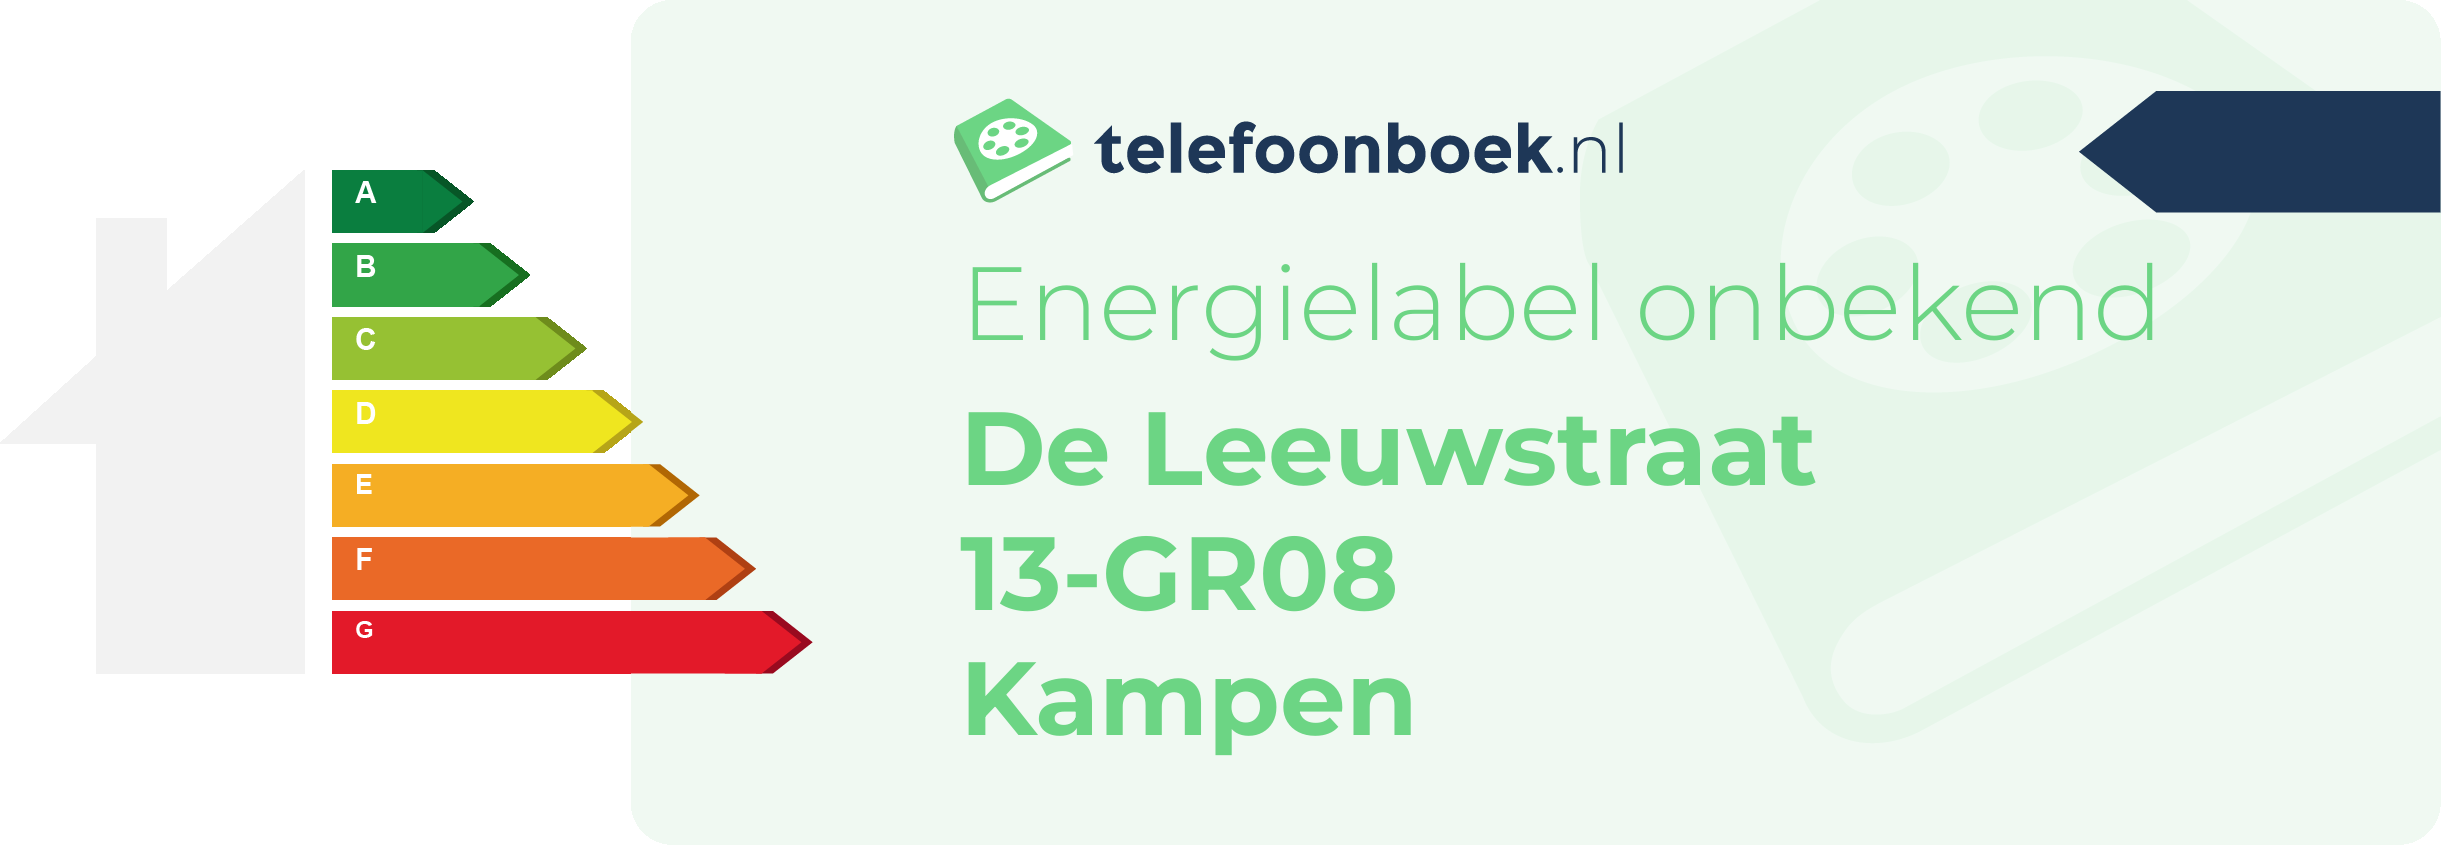 Energielabel De Leeuwstraat 13-GR08 Kampen